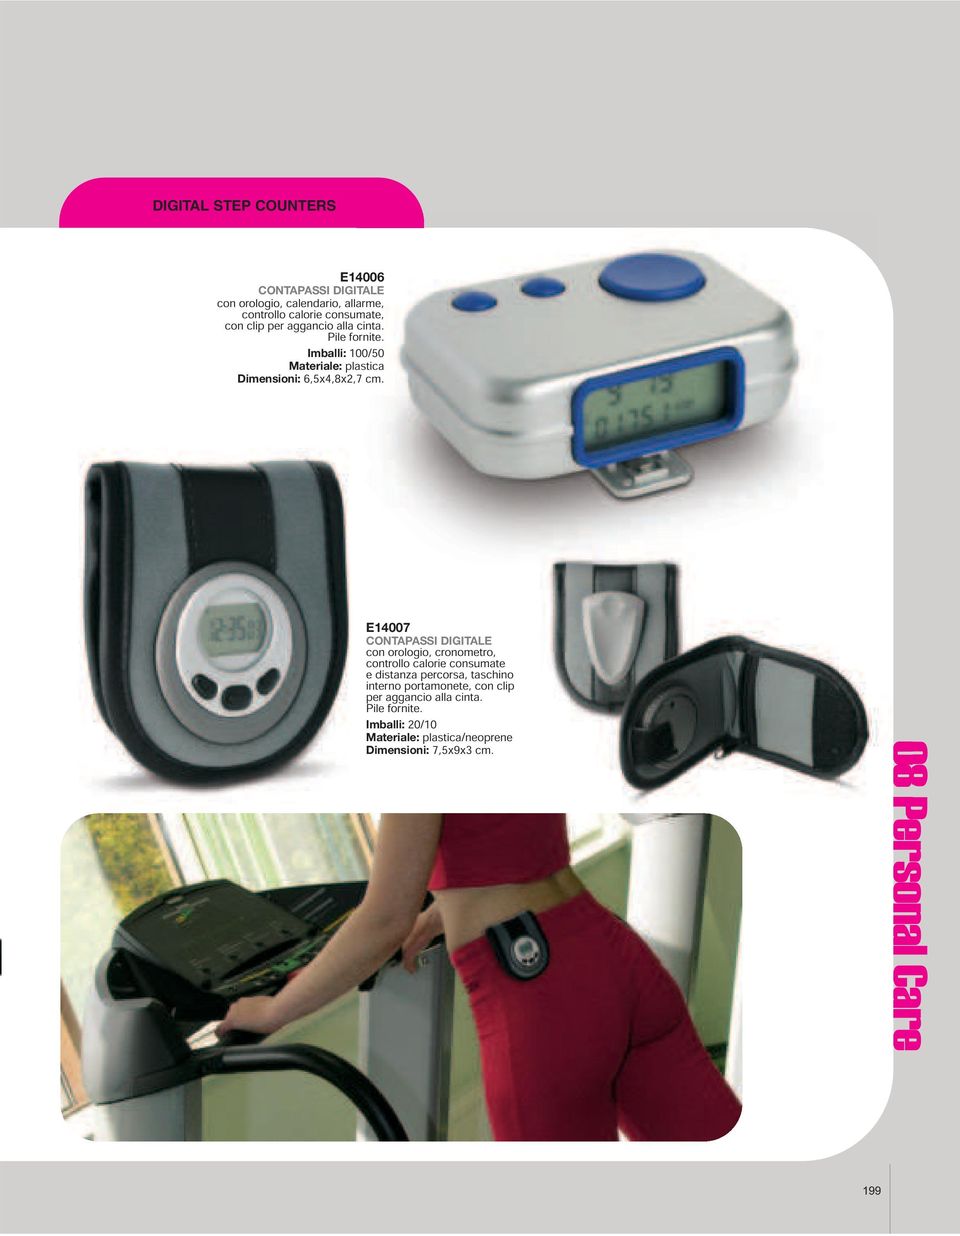 E14007 CONTAPASSI DIGITALE con orologio, cronometro, controllo calorie consumate e distanza percorsa,